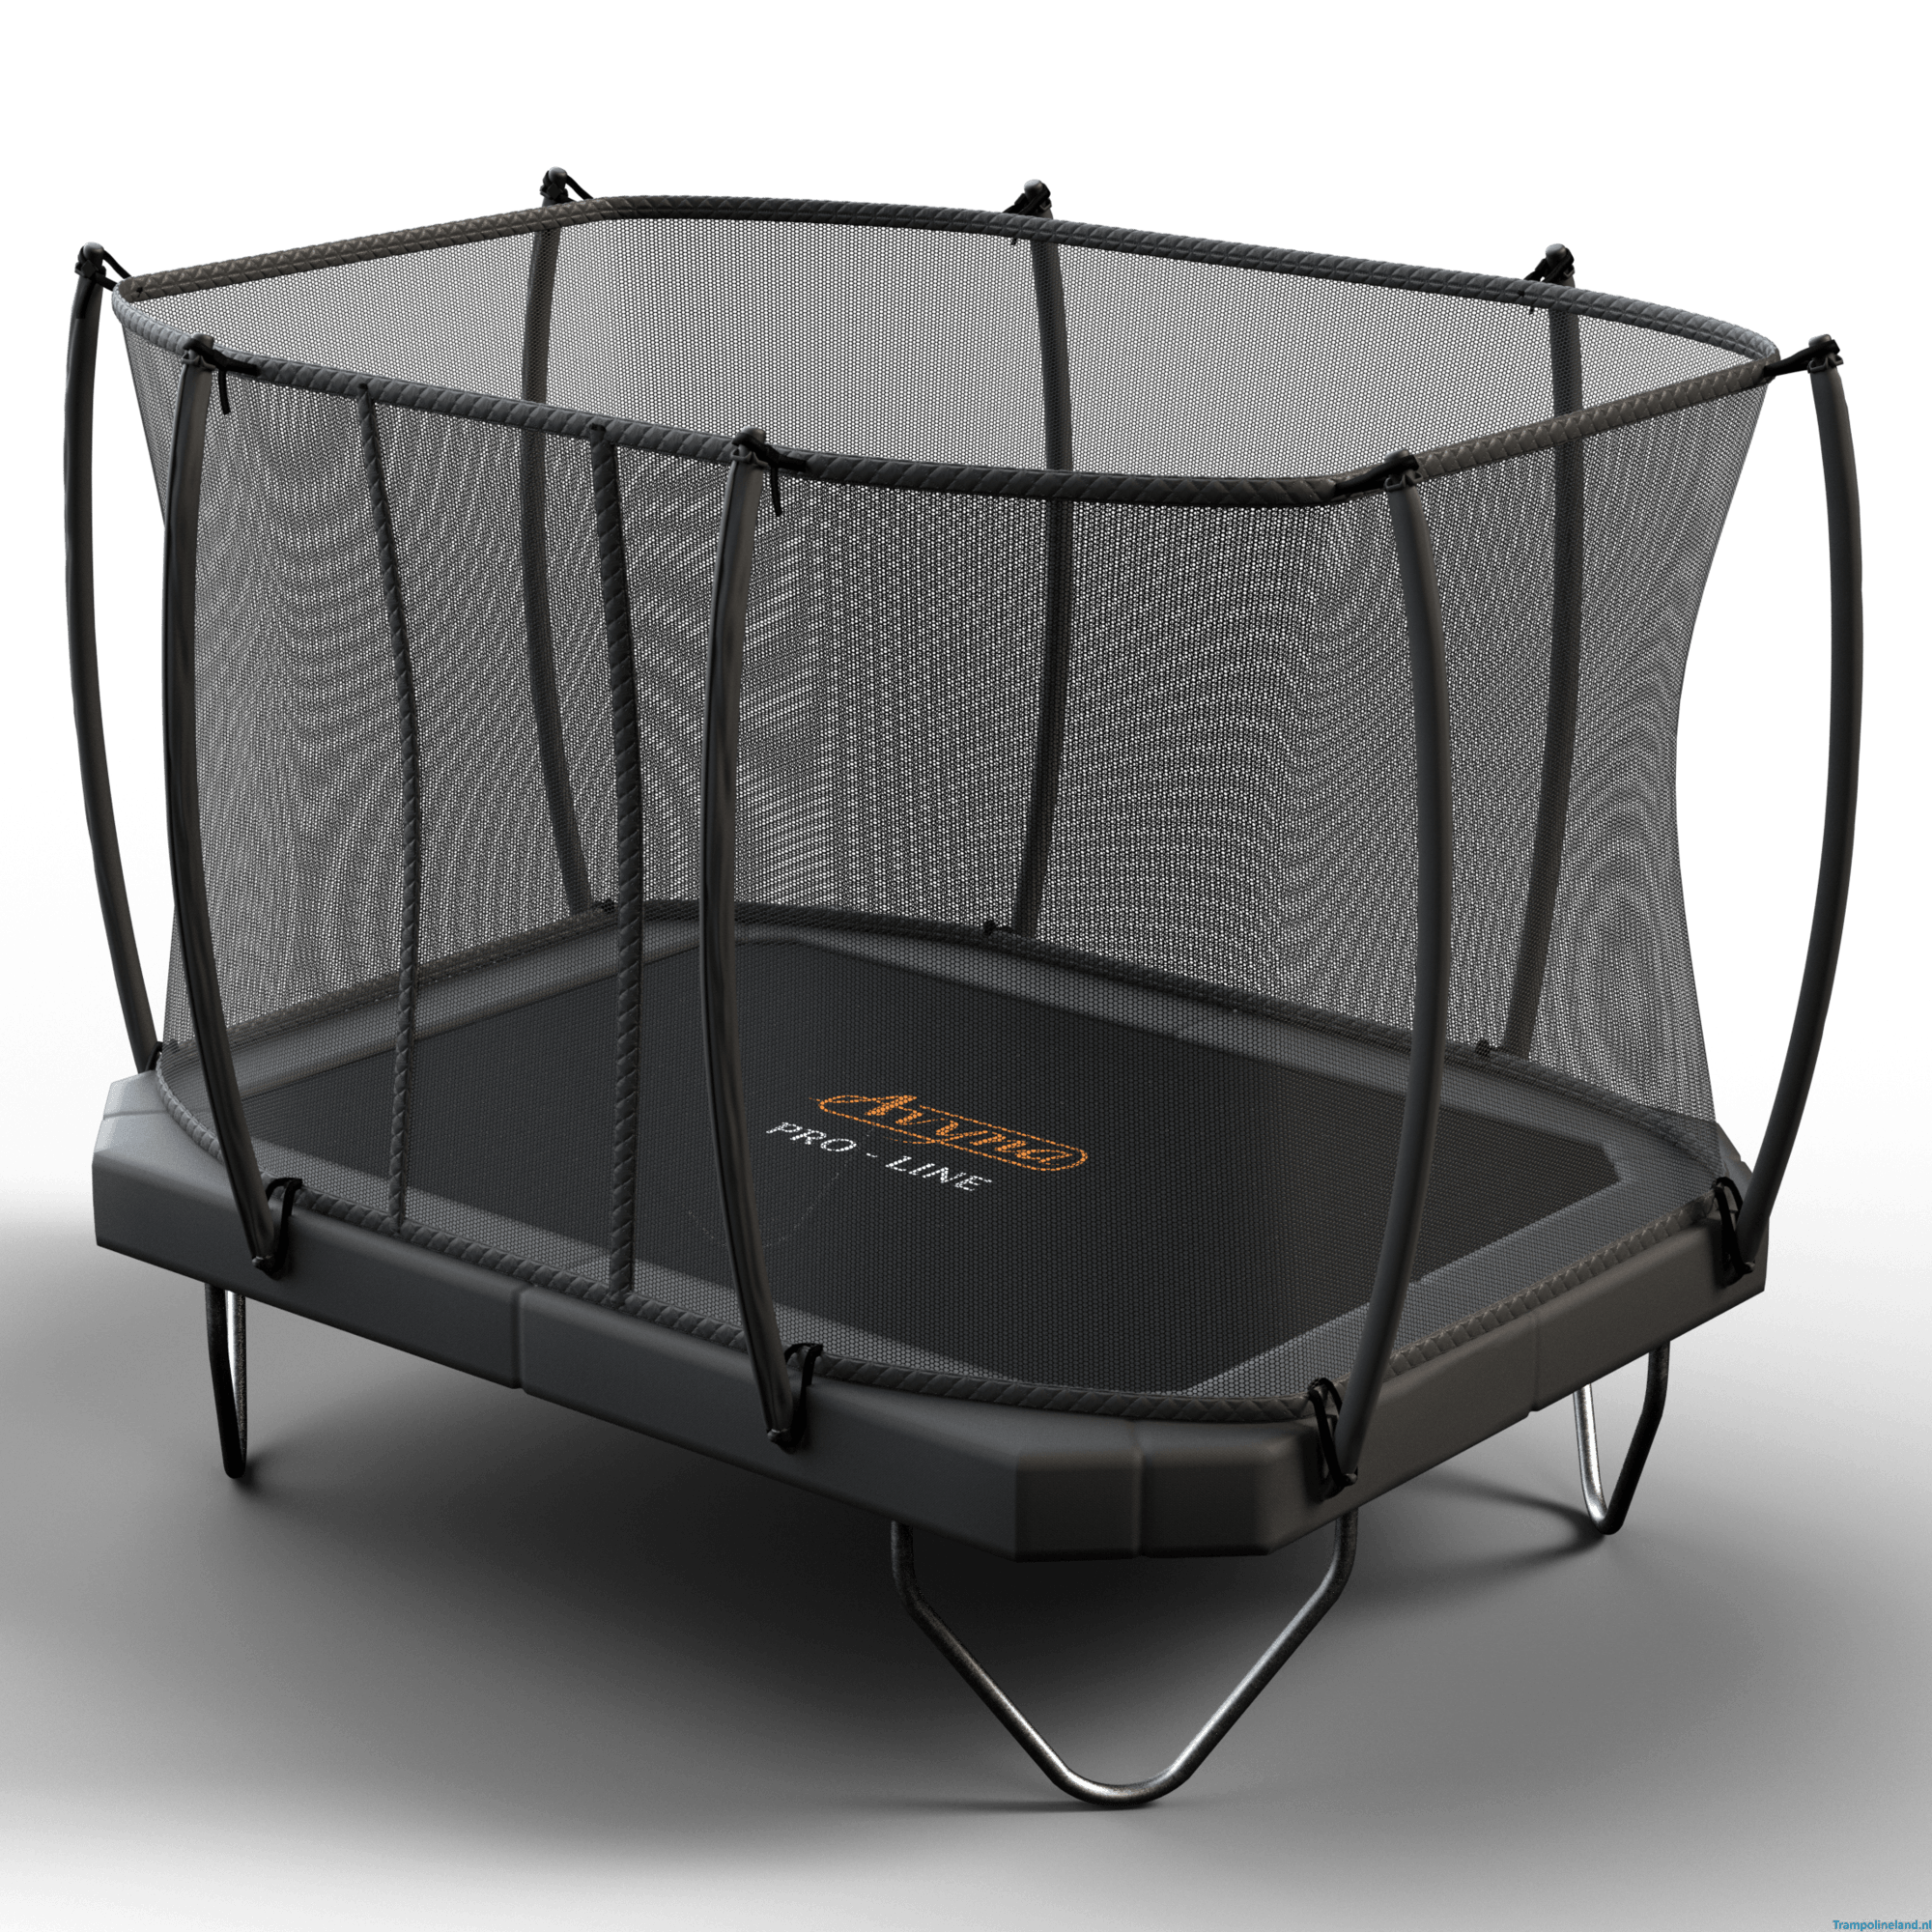 Zeg opzij oud Prestigieus PRO-LINE 223 Combi trampoline Camouflage | Trampolines kopen bij  trampolineverkoop